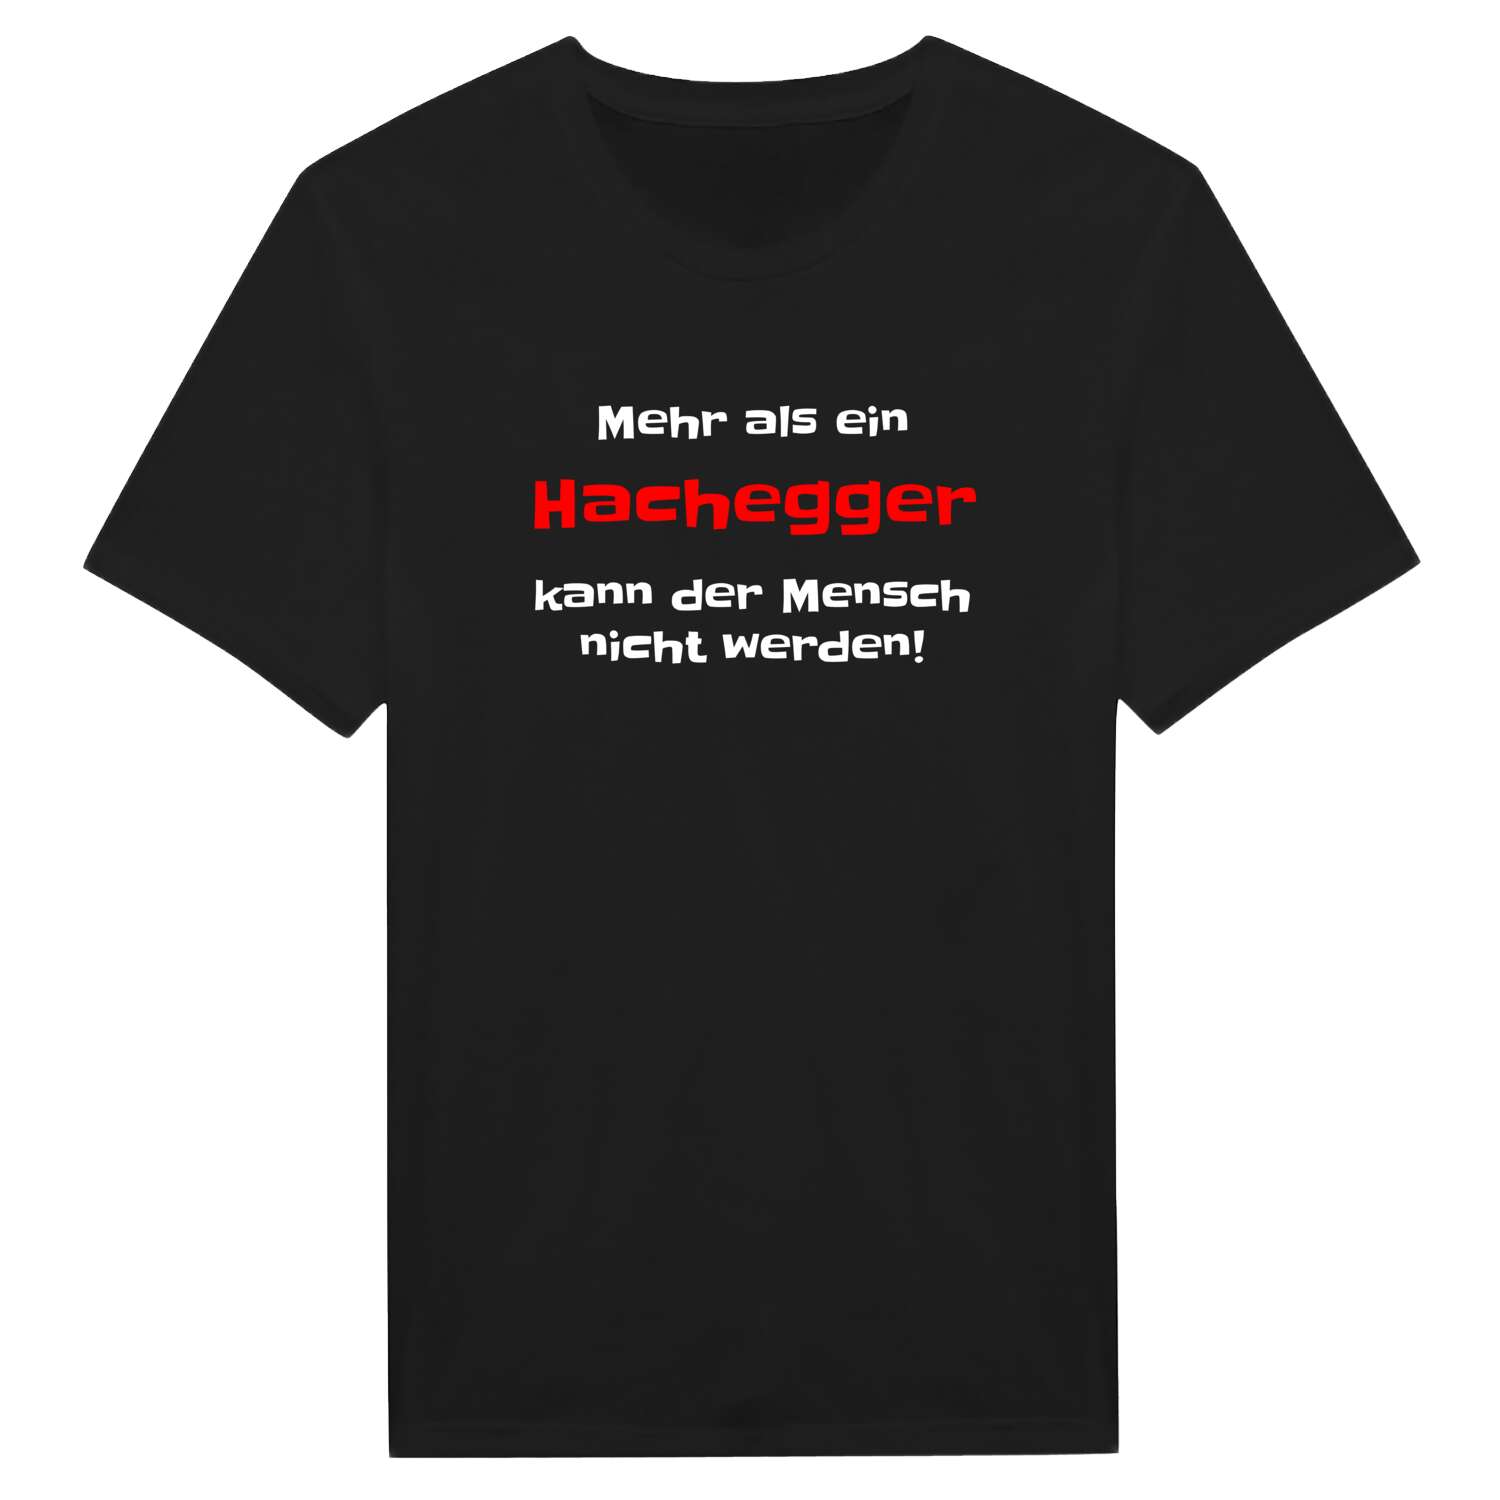 Hachegg T-Shirt »Mehr als ein«